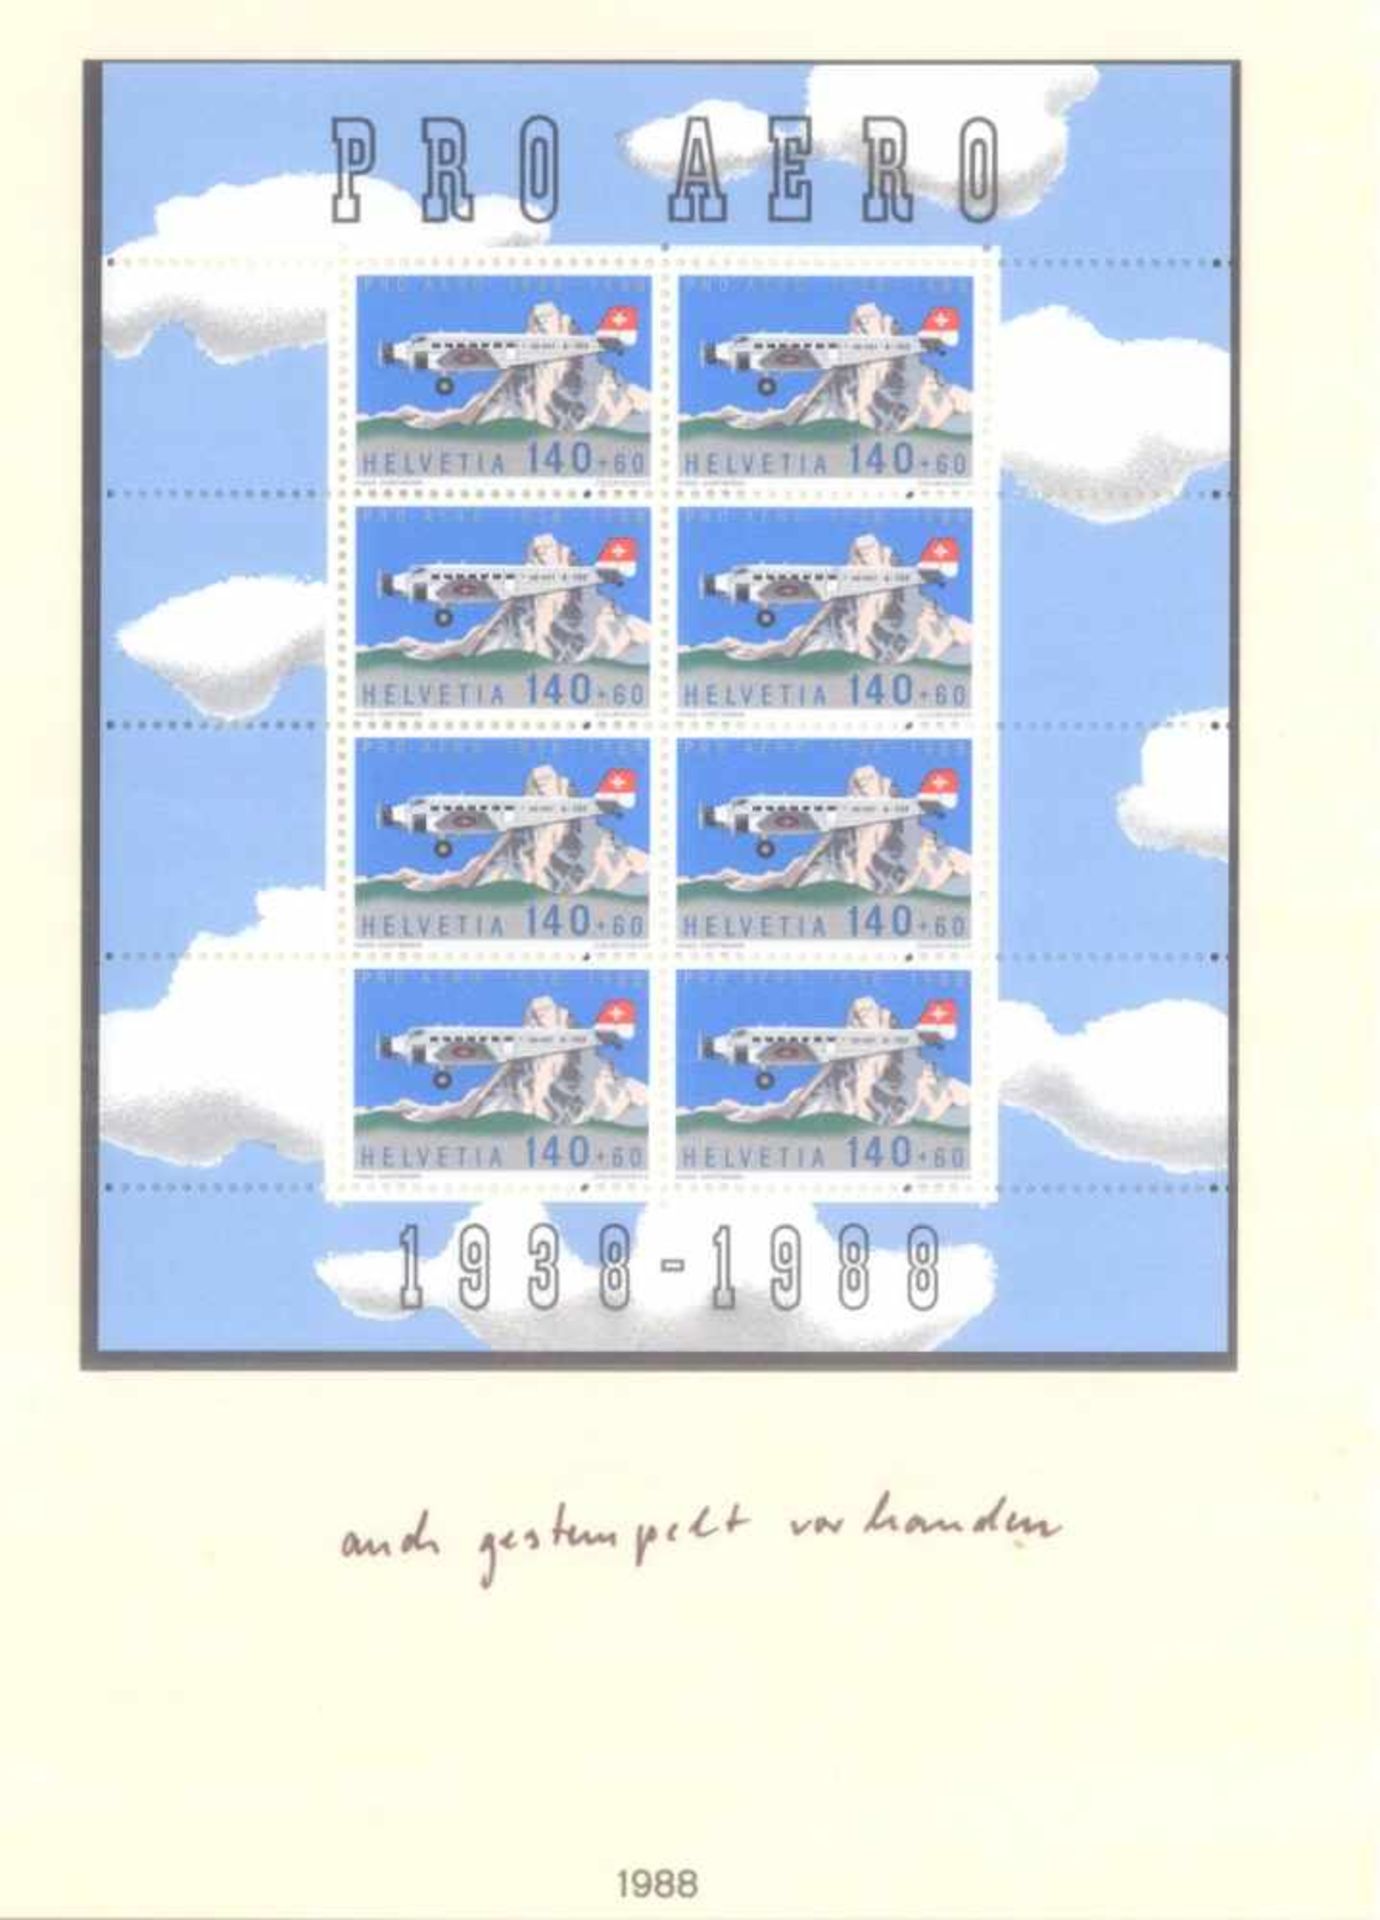 SCHWEIZ 1979-1990; mit 248,- SCHWEIZER FRANKEN NOMINALE!postfrische, komplette Sammlung - nach den - Bild 4 aus 6